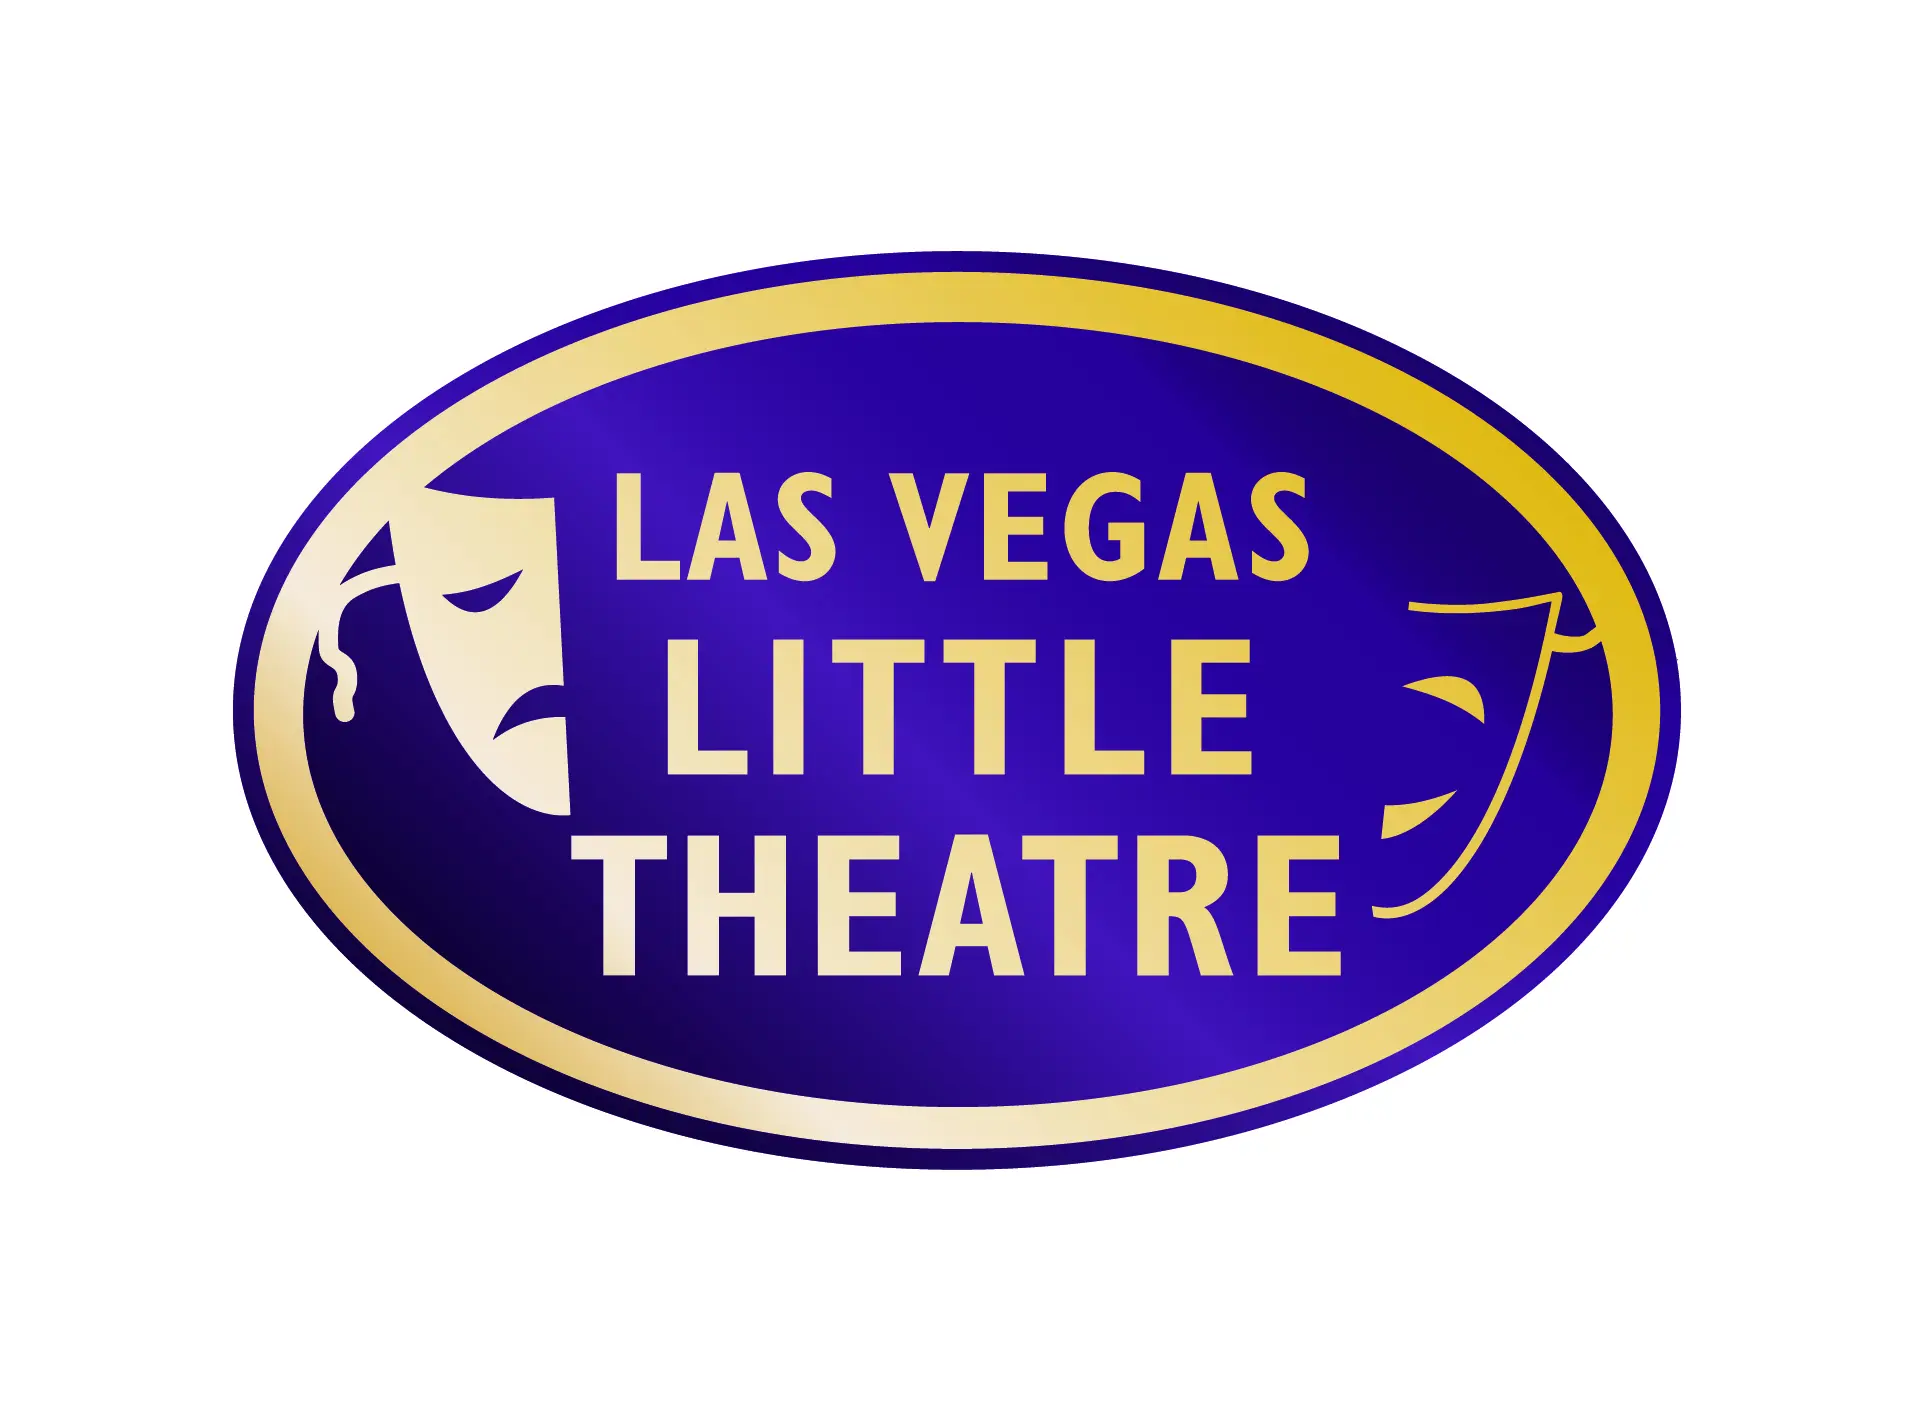 Las Vegas Little Theatre